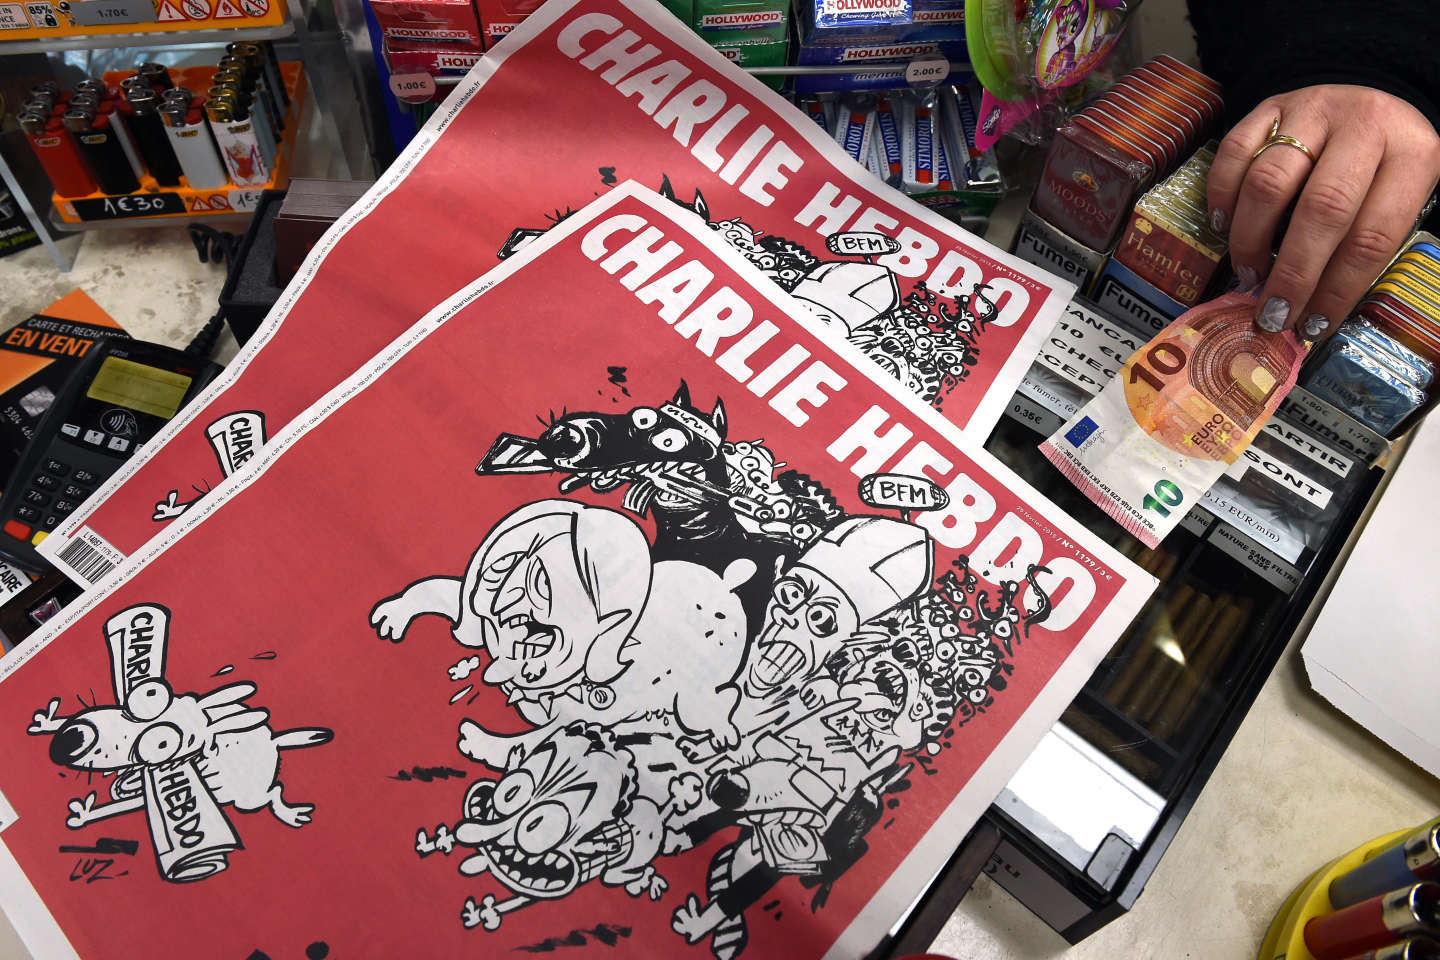 Le piratage de « Charlie Hebdo » en janvier s’inscrivait dans une campagne plus large des gardiens de la révolution iraniens